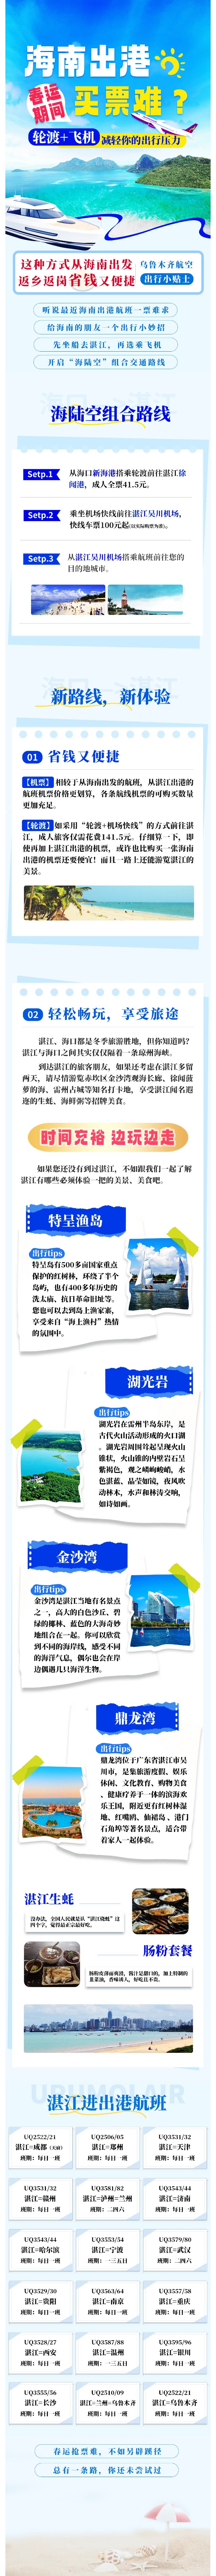 乌鲁木齐航空运营多条湛江进出港航线，助力海南旅客春节返程